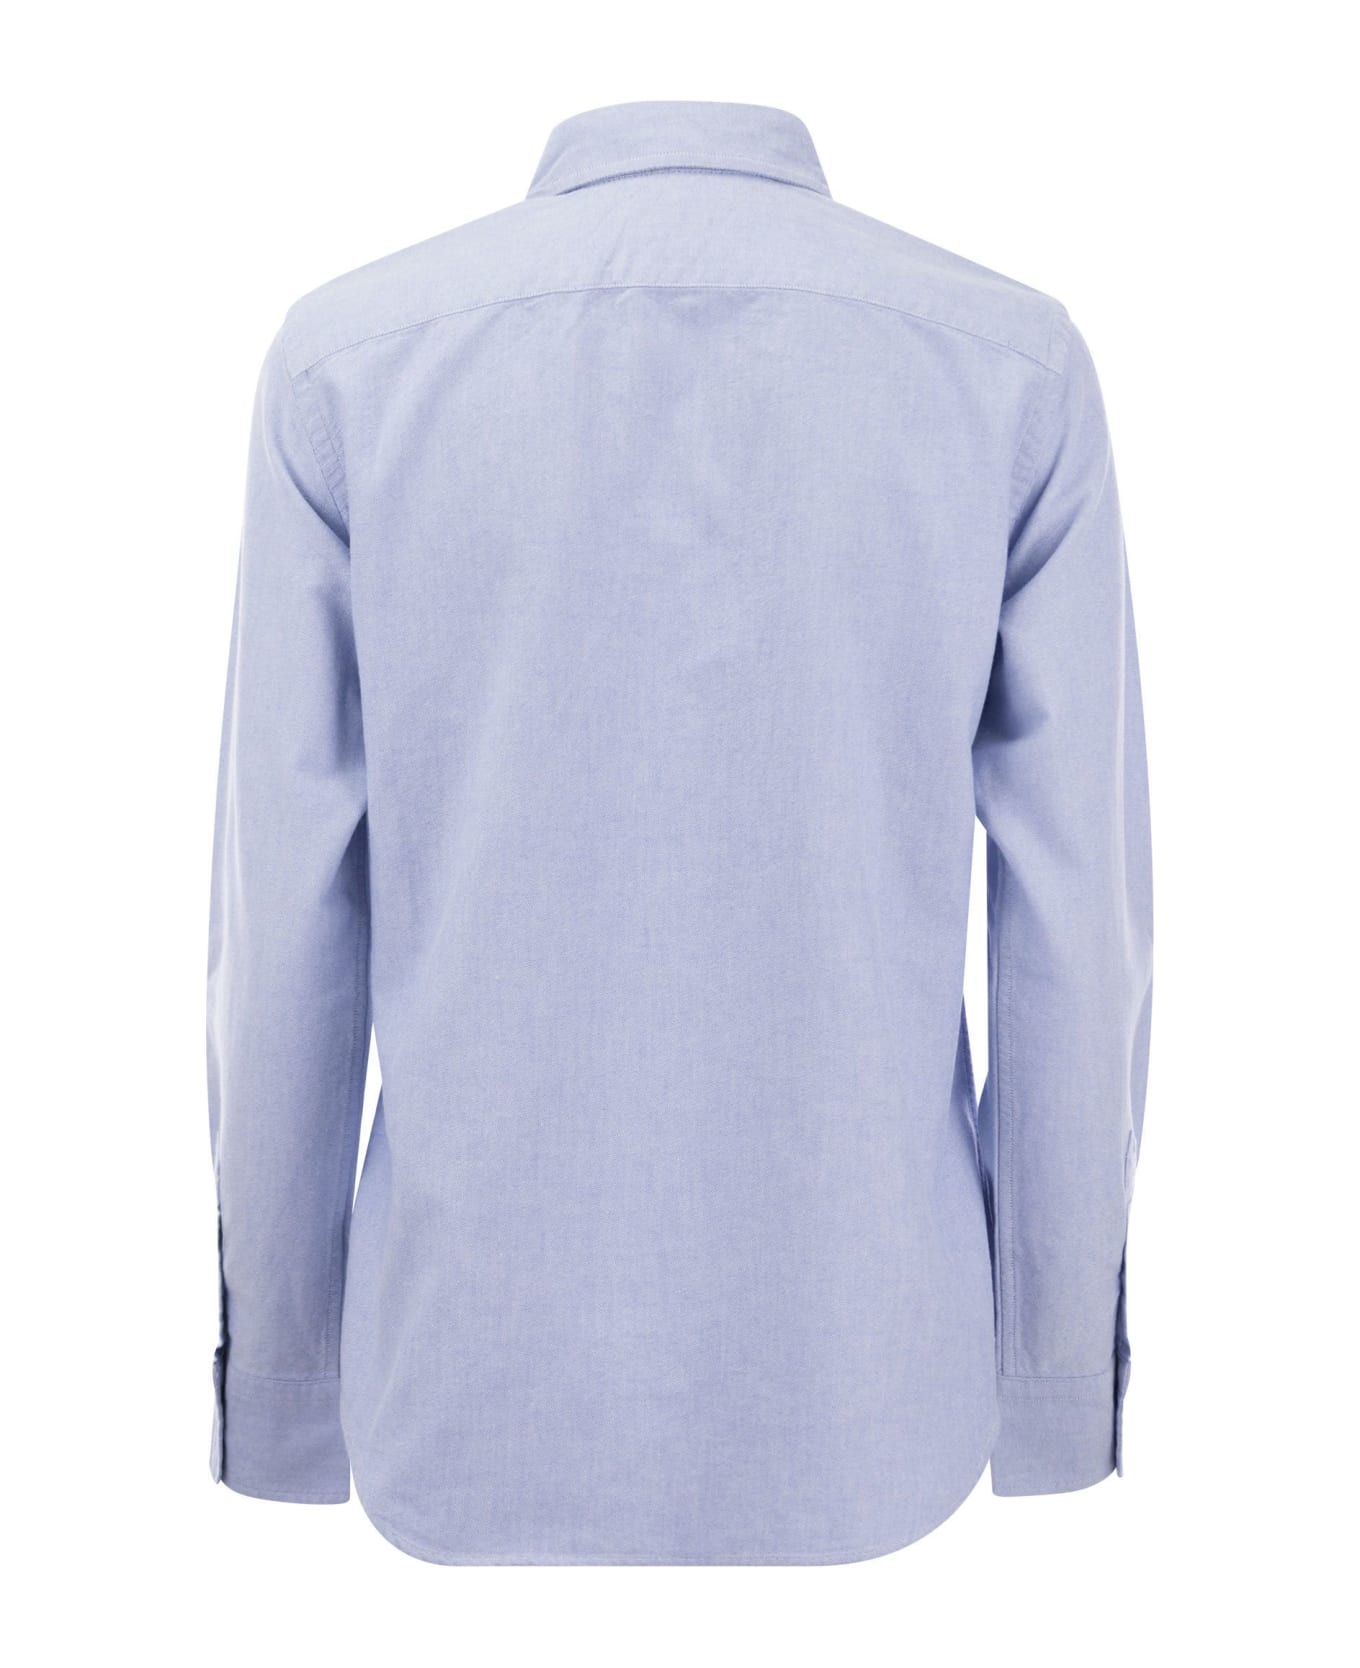 Polo Ralph Lauren Oxford Logo Shirt - Light Blue